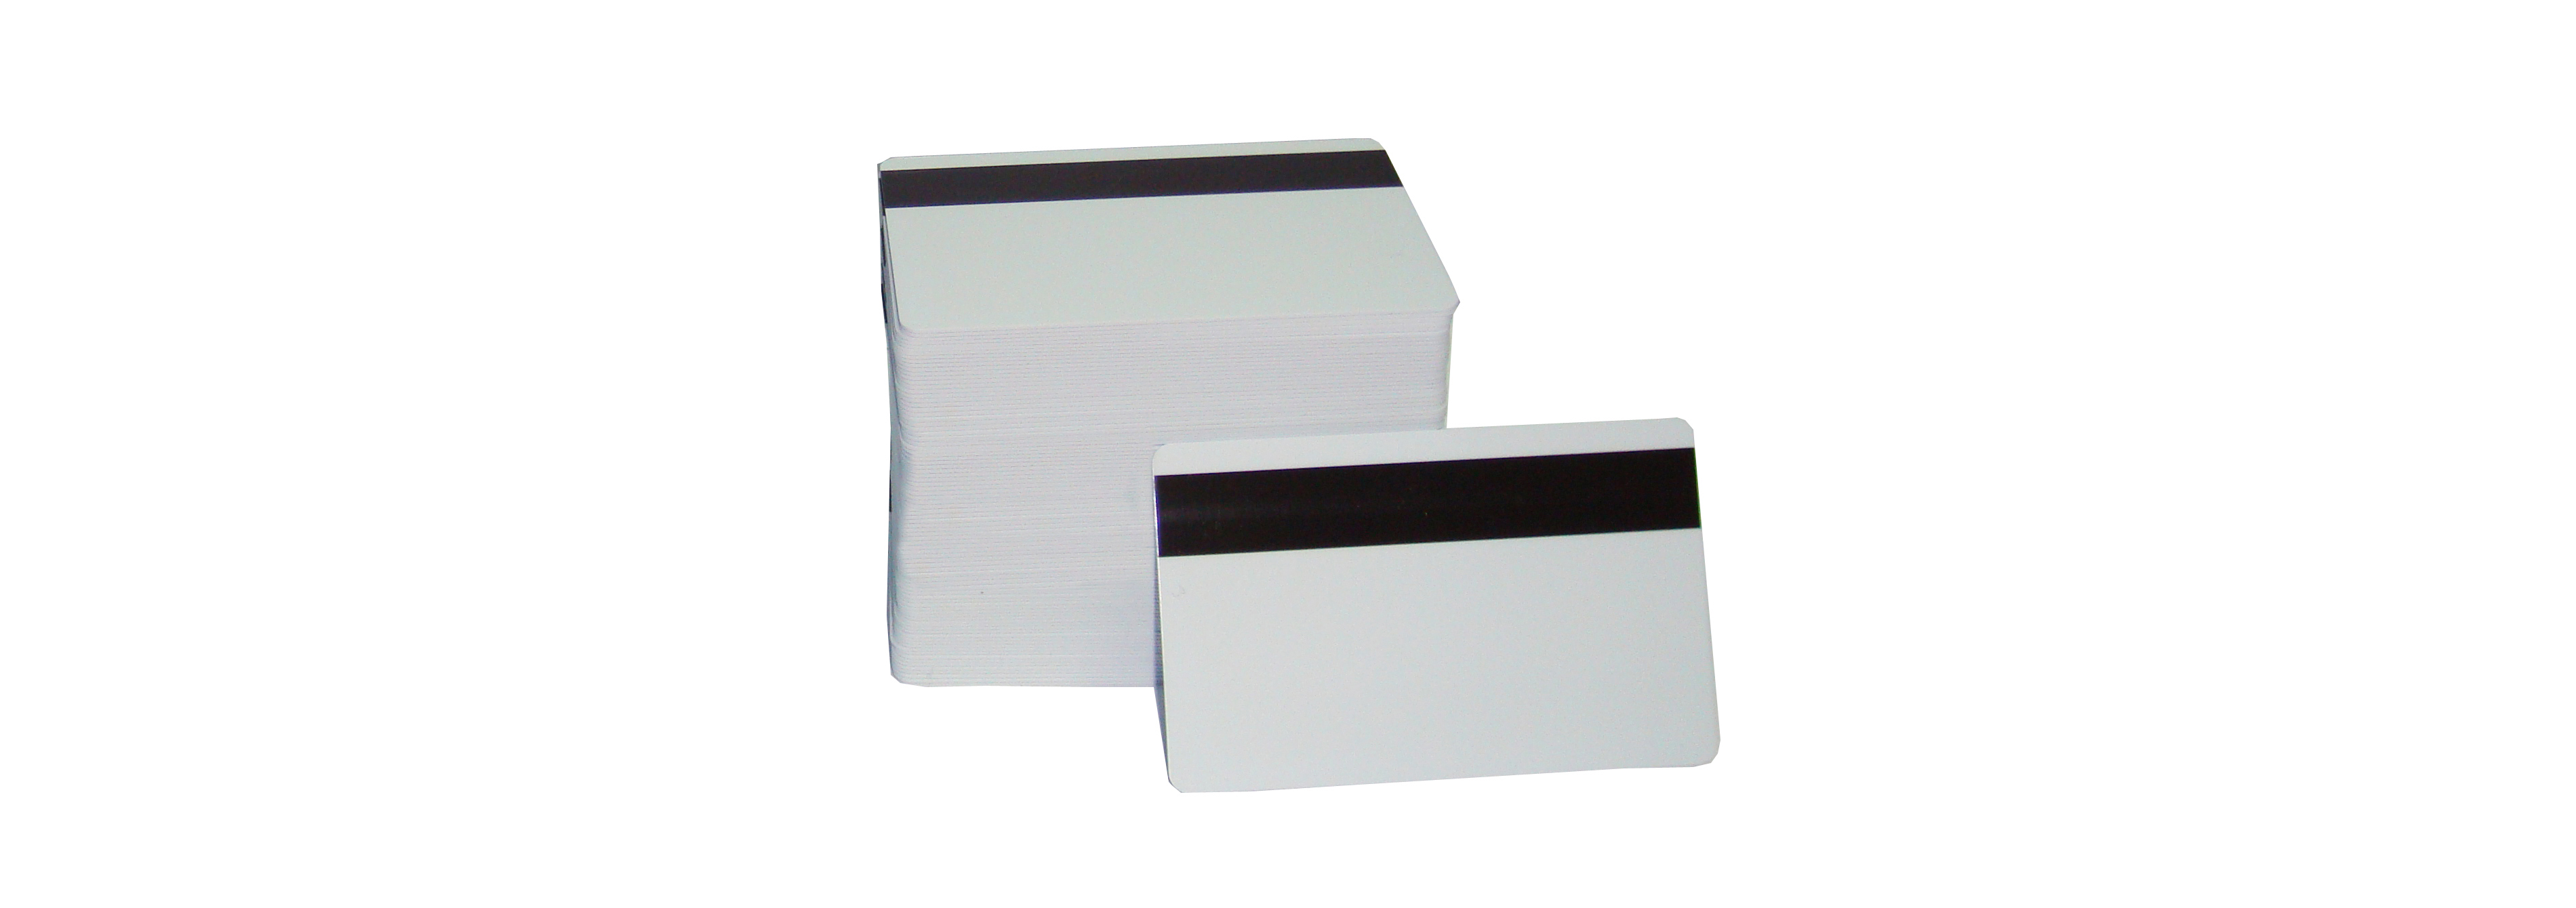 HiCo-LoCo Mag Stripe Cards